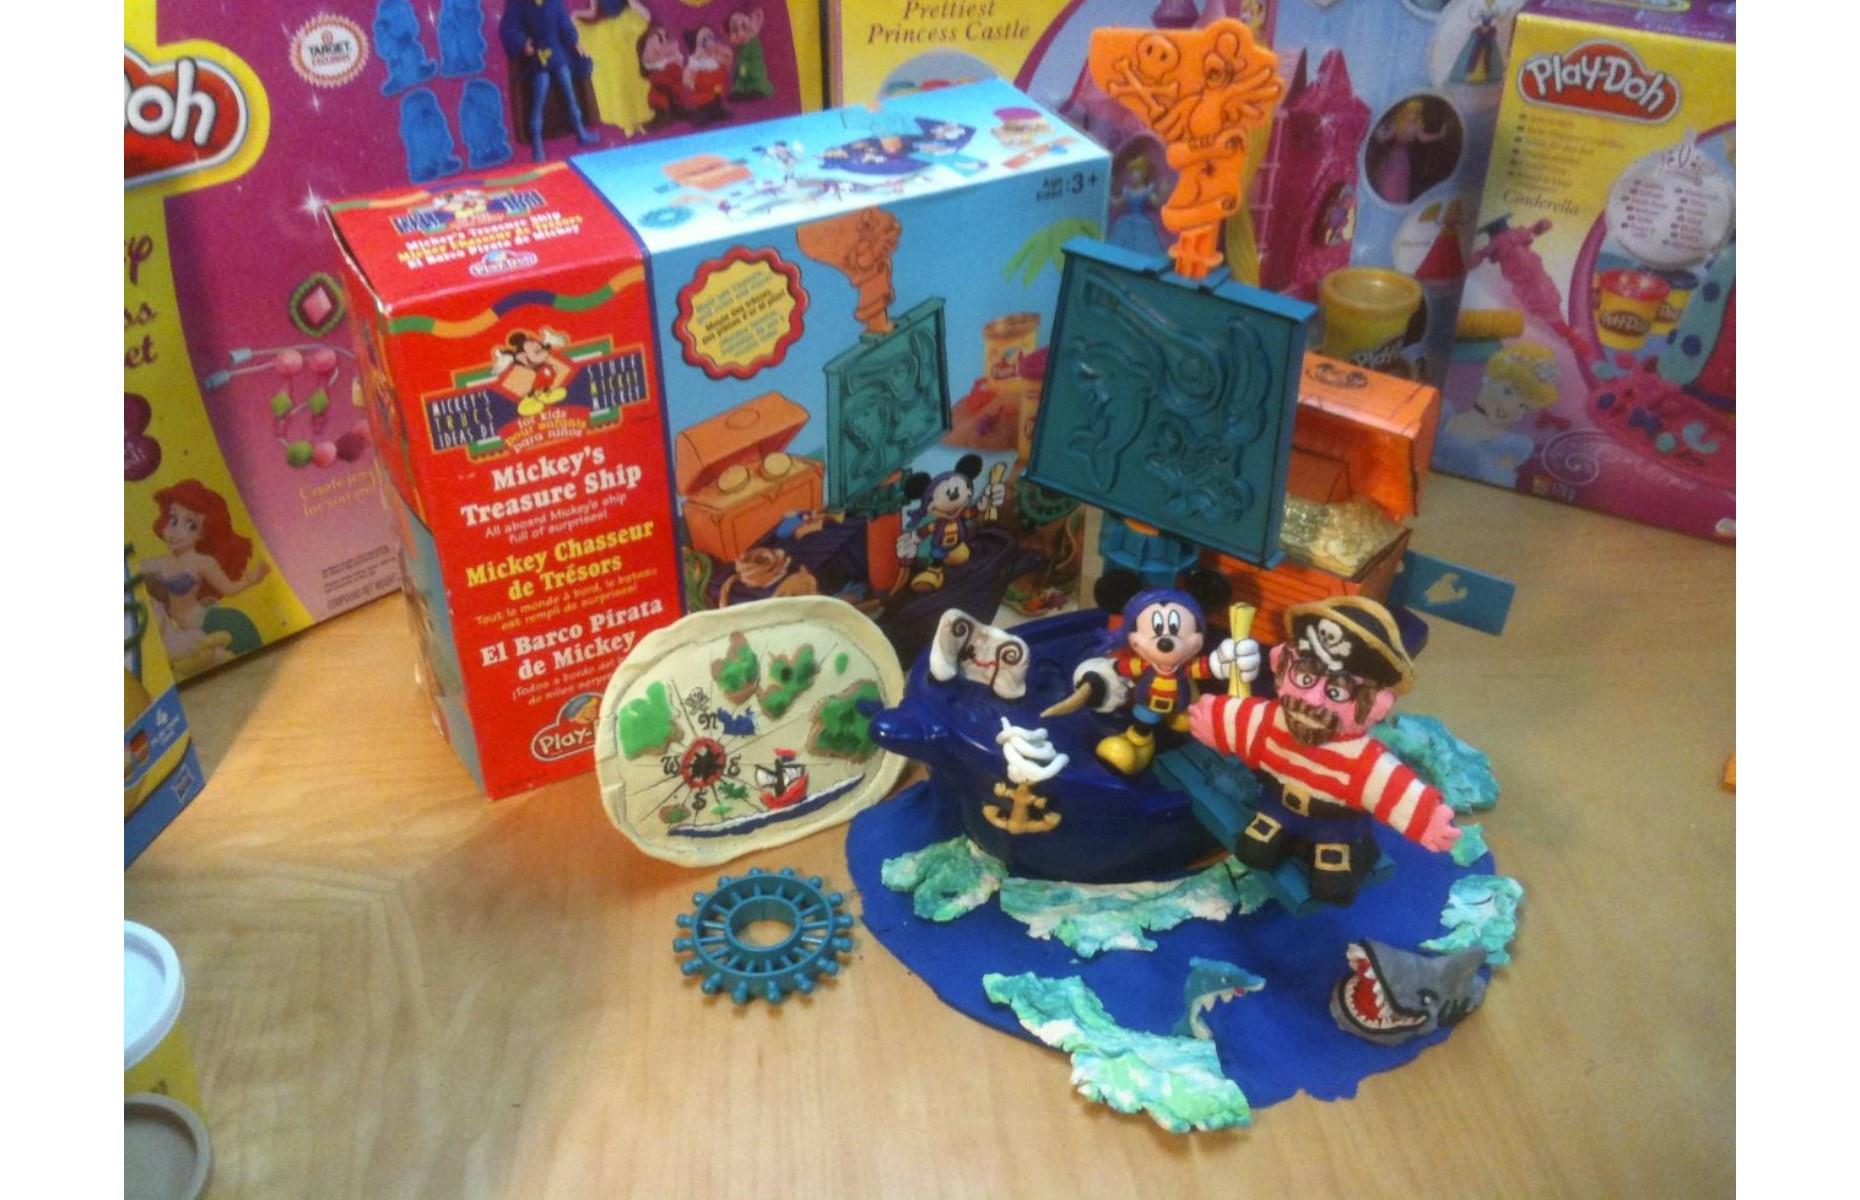 Hasbro Mickey's Treasure Ship Play-Doh set: up to $140 (£108)